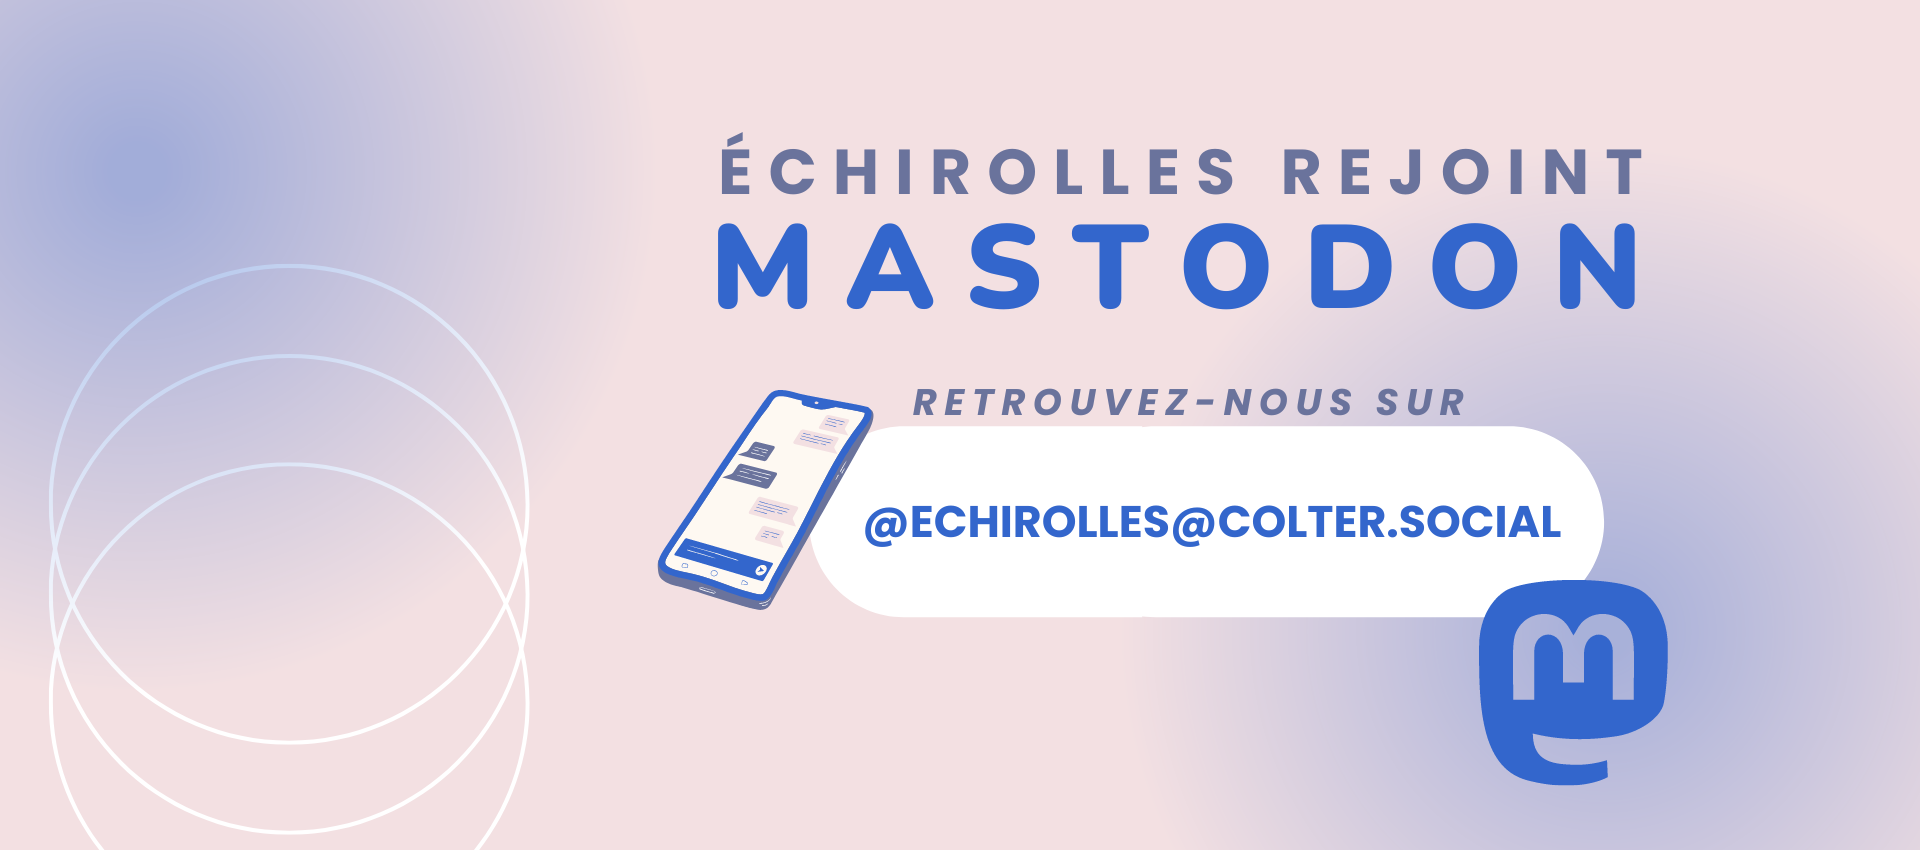 Visuel d'annonce pour Echirolles sur Mastodon rose et bleu, avec le logo dur éseau